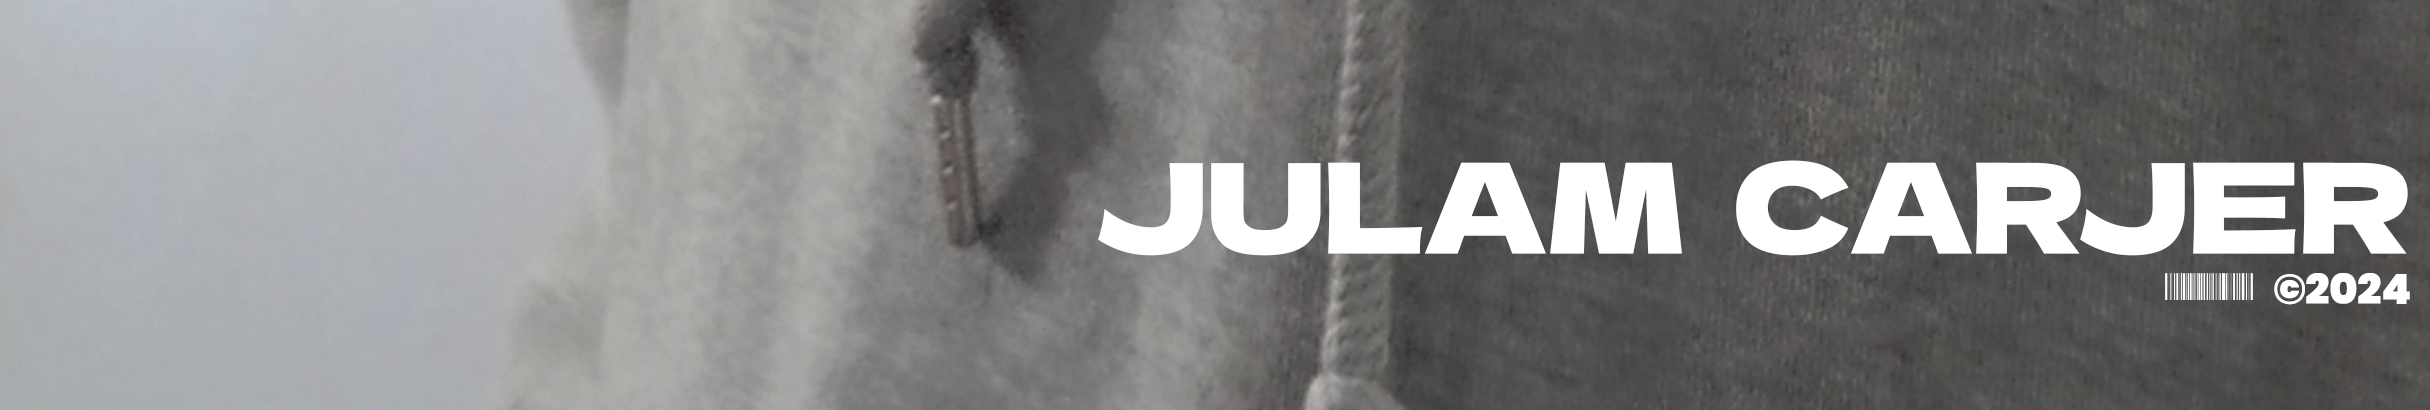 Julam Carjer's profile banner